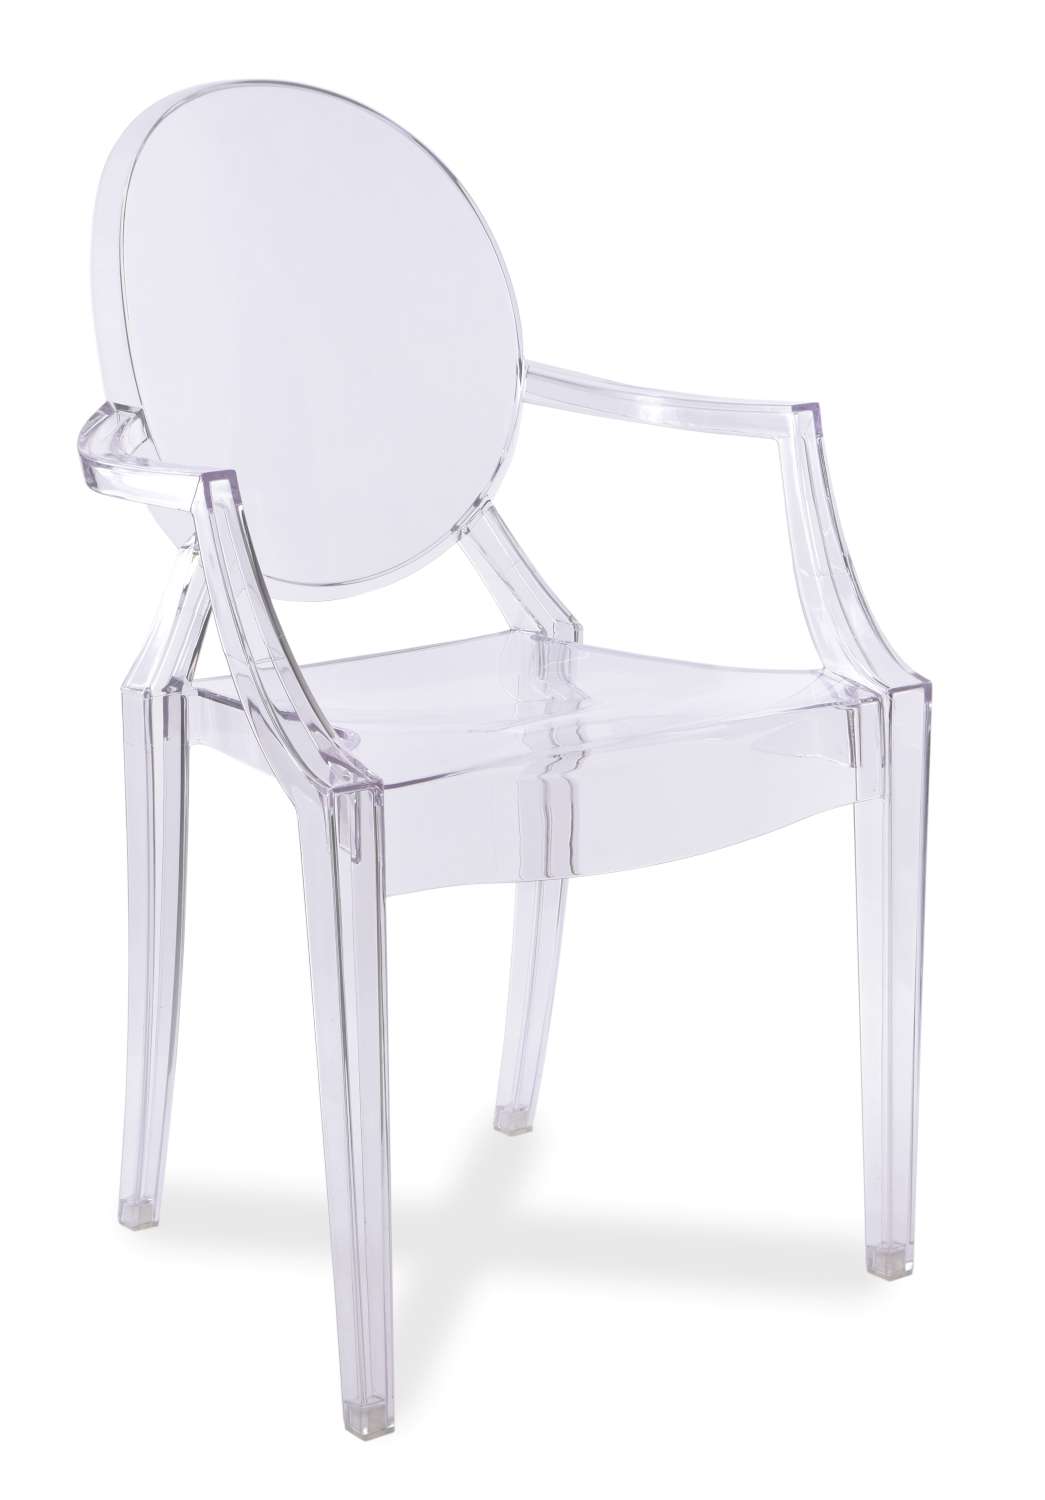 Transparentne krzesło King